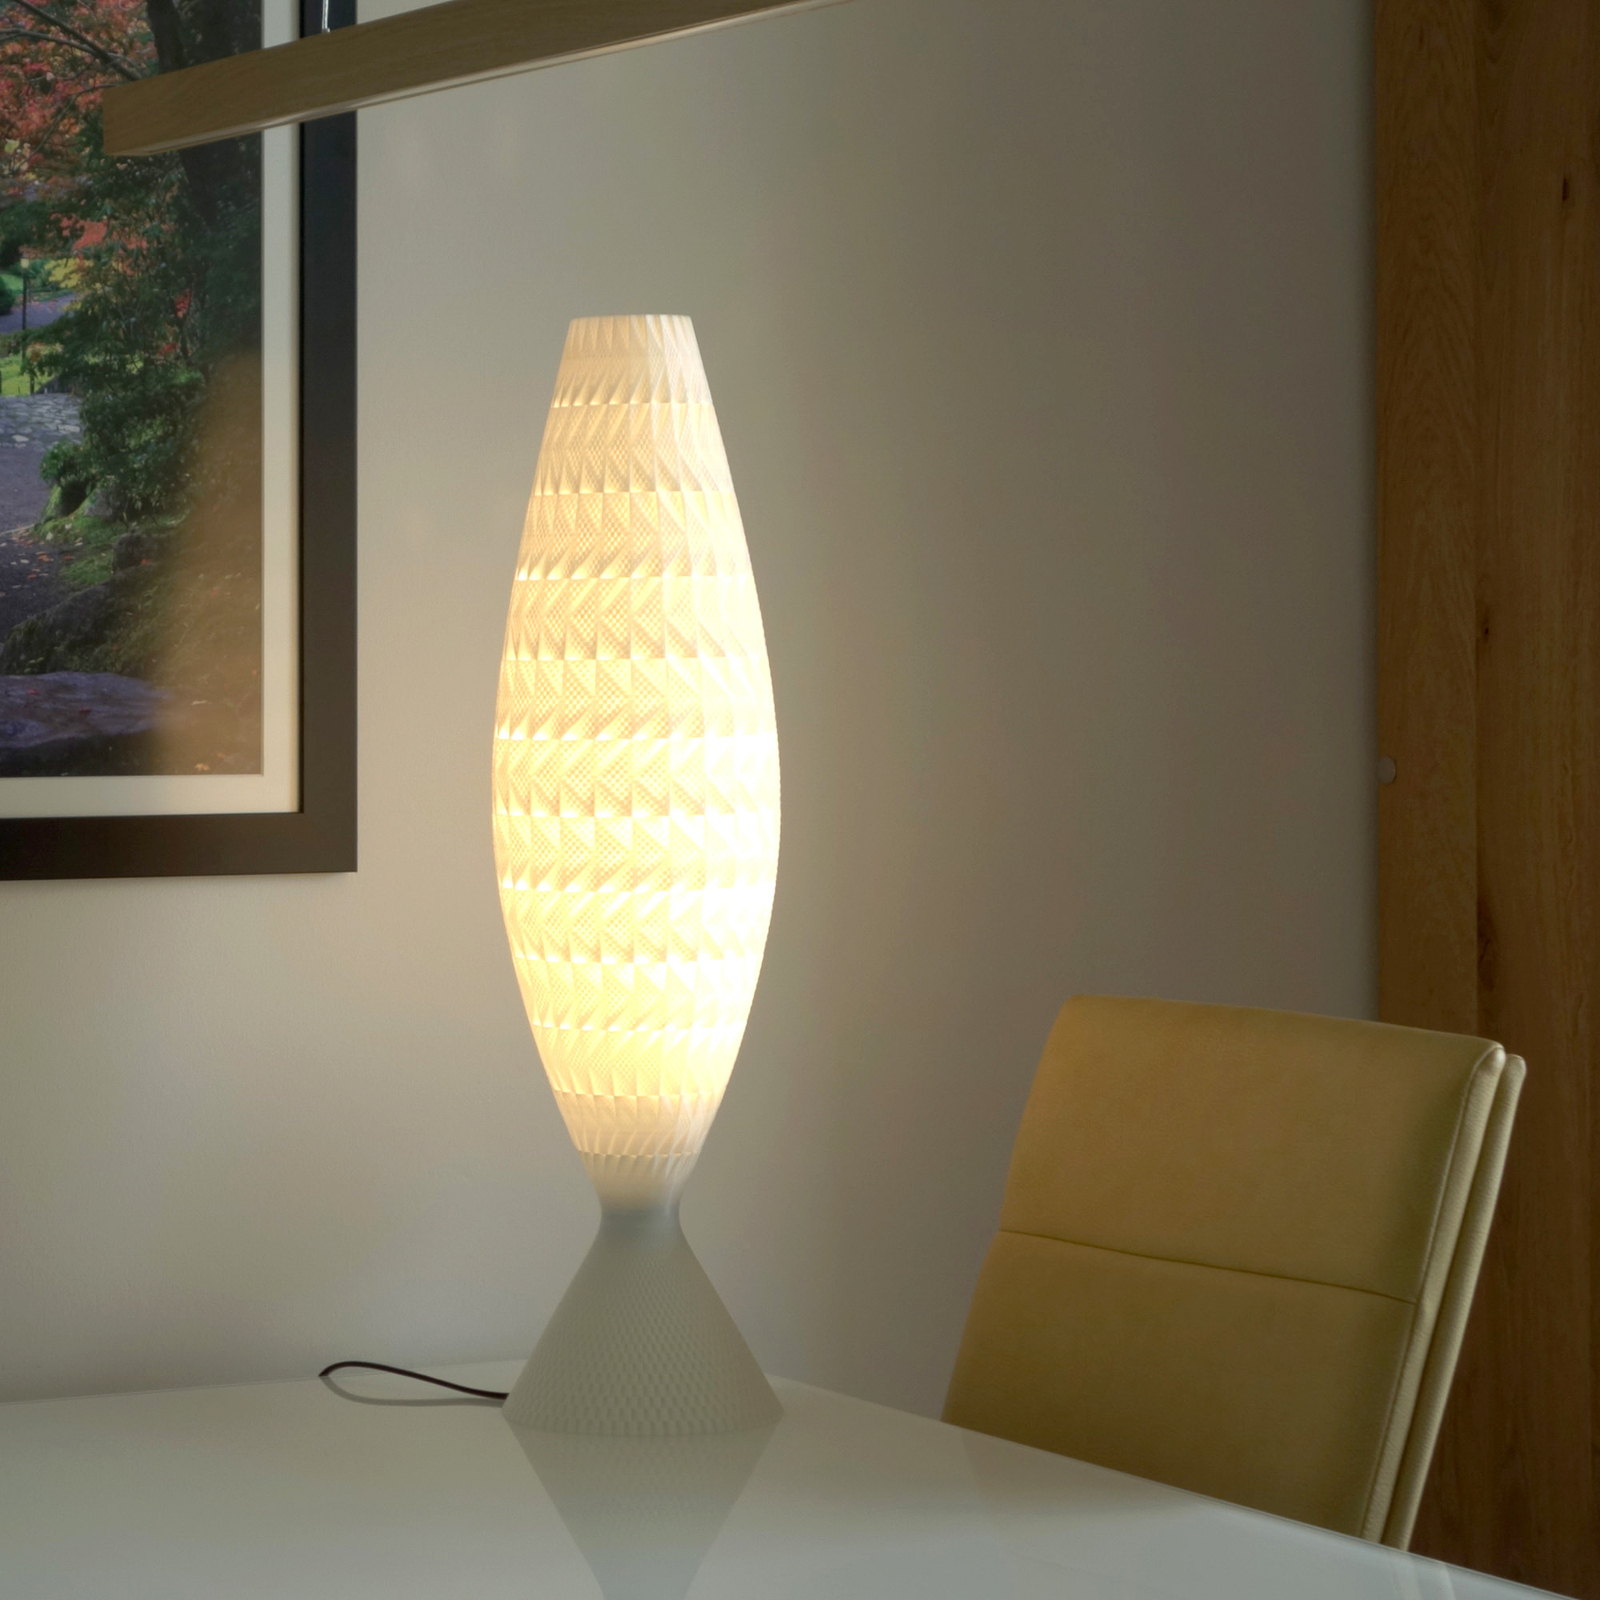 Fraktal table lamp made of biomaterial, silk, 65 cm